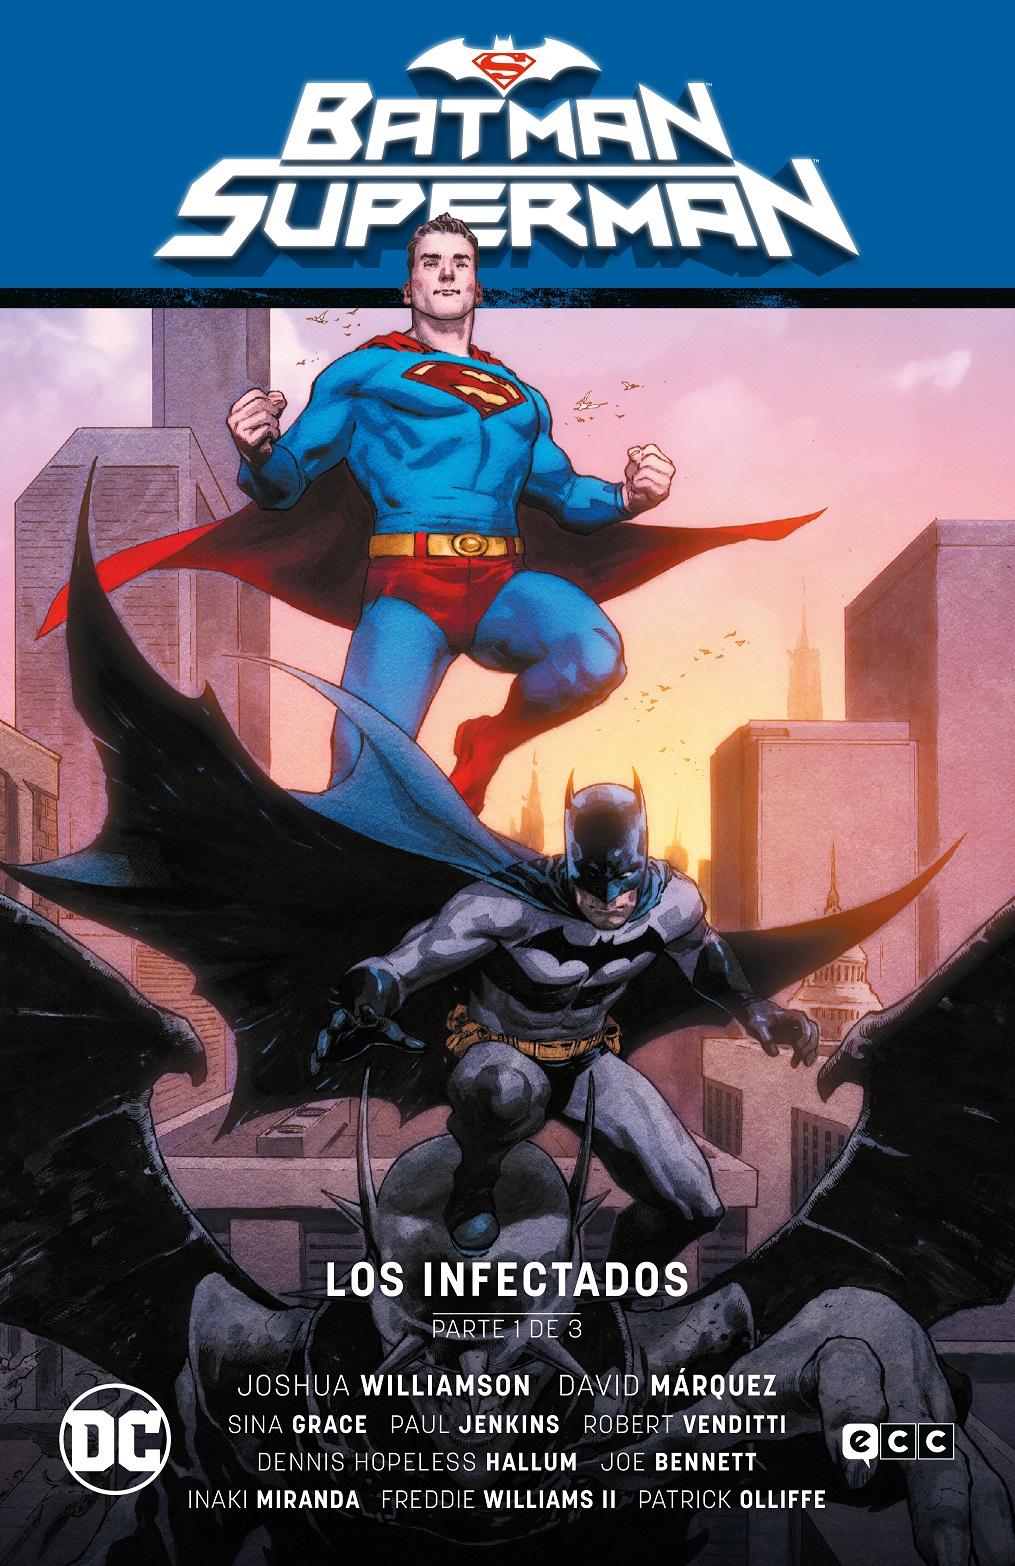 Batman/Superman Vol.01: Los infectados Parte 1 (El infierno se alza Parte 1)